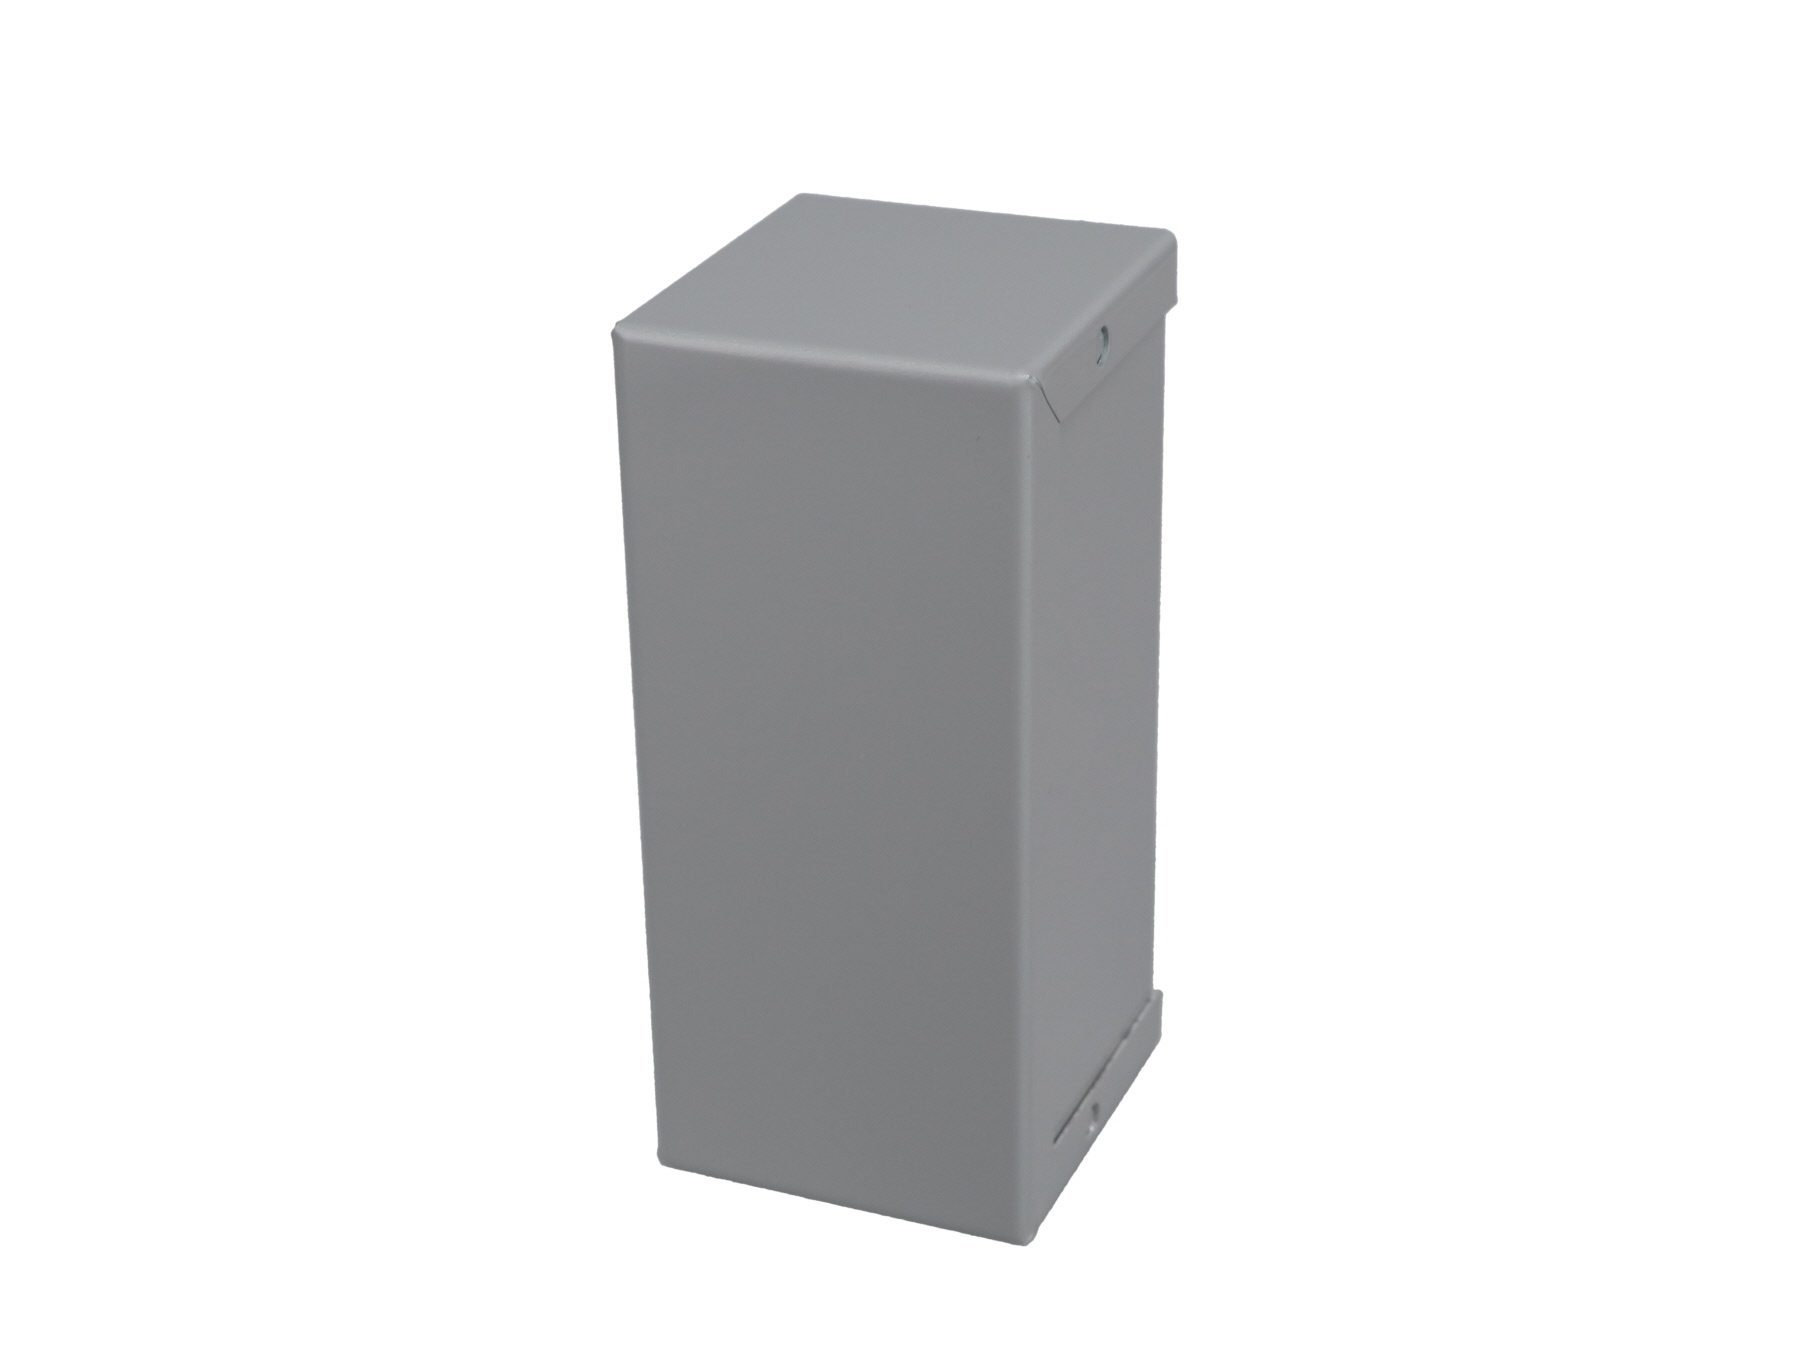 Minibox Small Metal Box Gray CU-2104-B